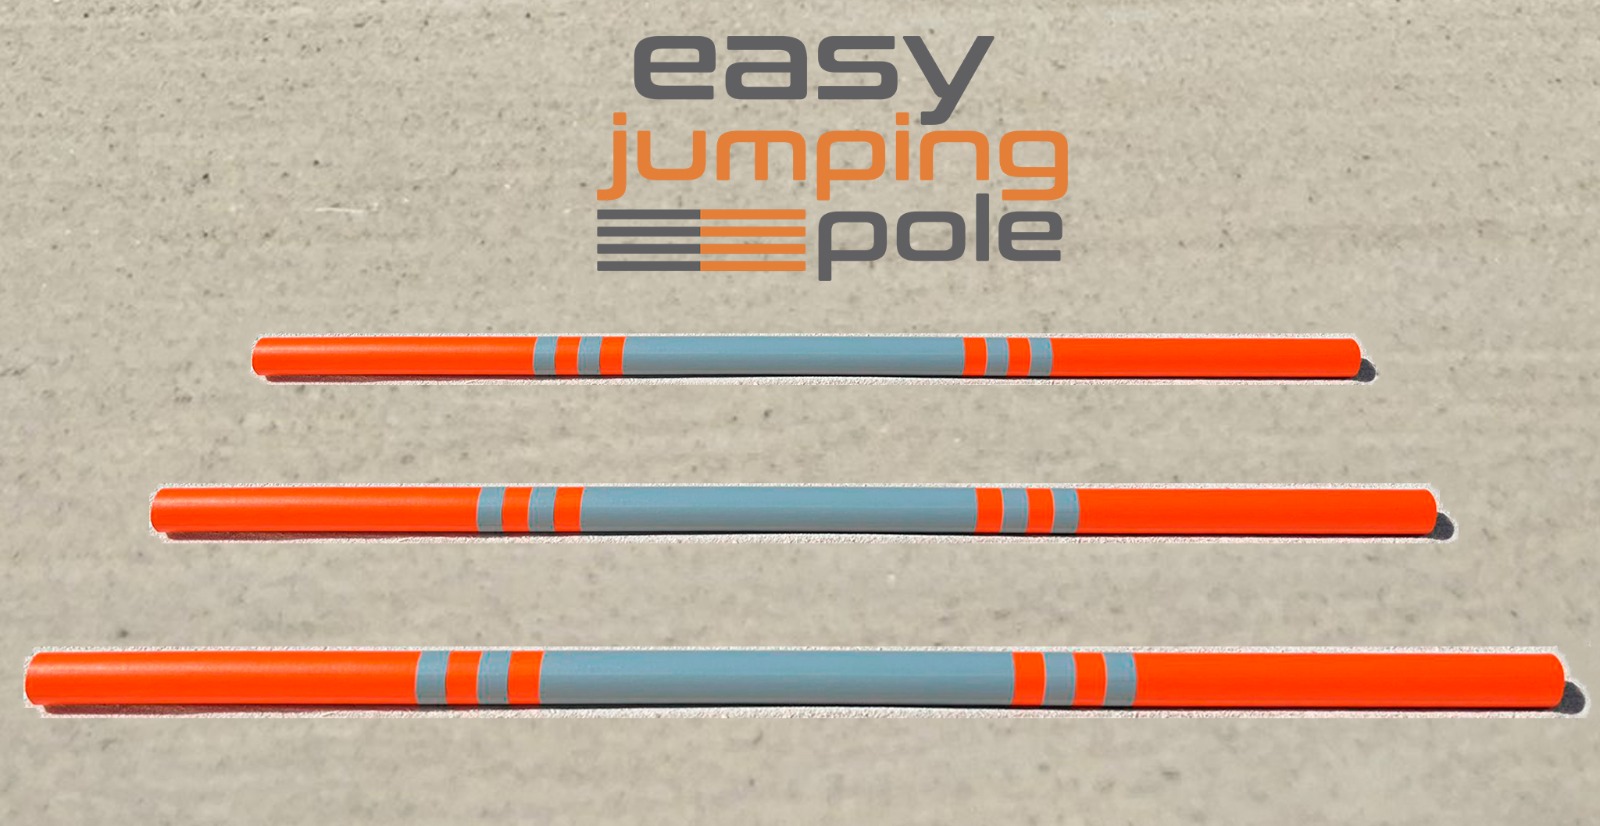 Easy jumping pole Model E-1